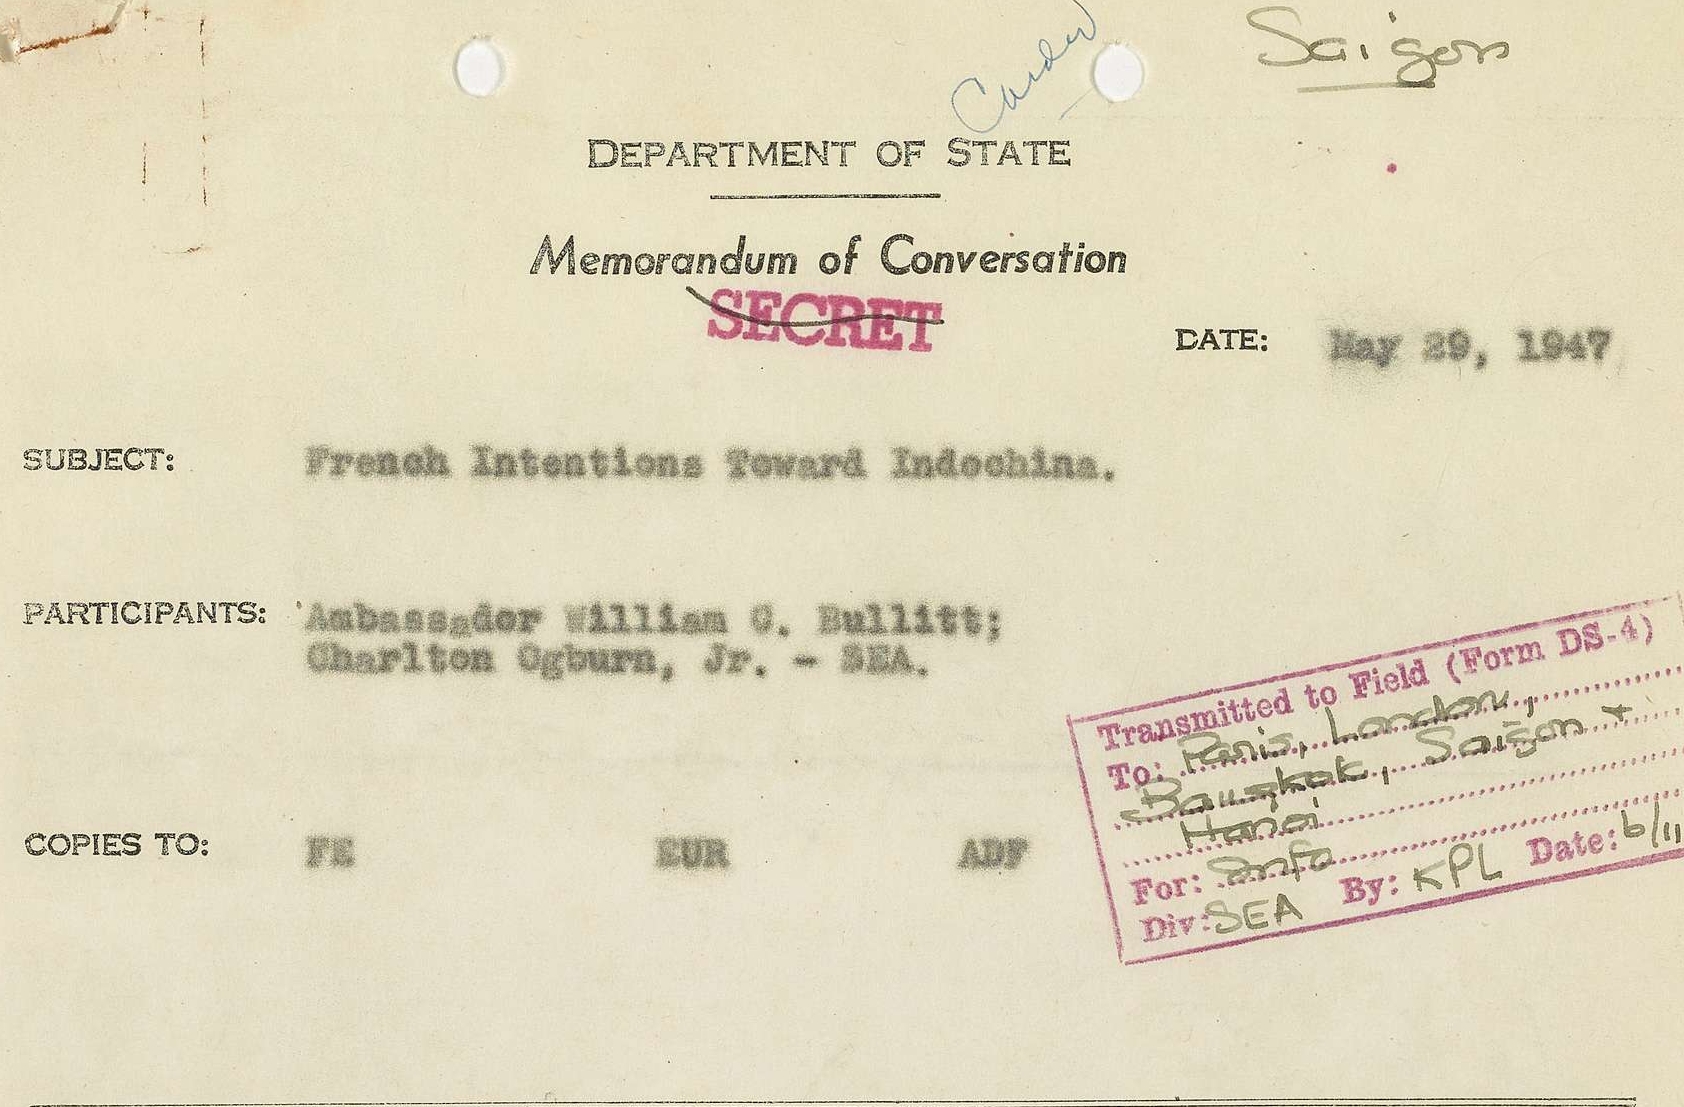 Memorandum of Conversation Between Ambassador William G. Bullitt and Charlton Coburg